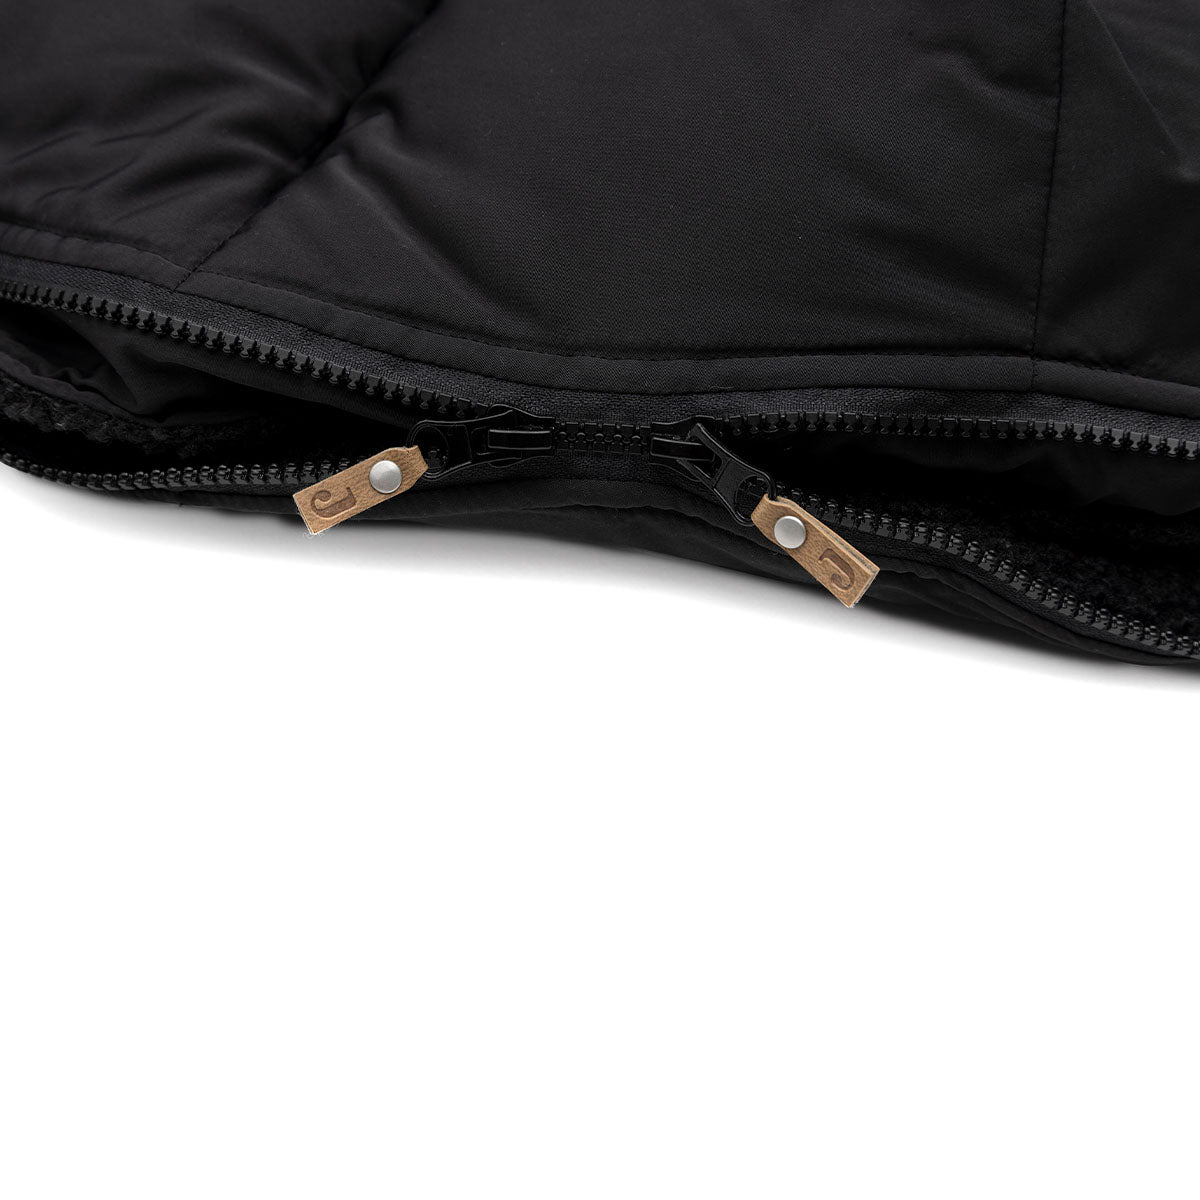 Stijlvol en warm: de voetenzak black van Jollein voor de buggy of kinderwagen. Bescherm jouw mini tegen de wind en kou. Met waterafstotende laag. Verkrijgbaar in diverse kleuren. VanZus